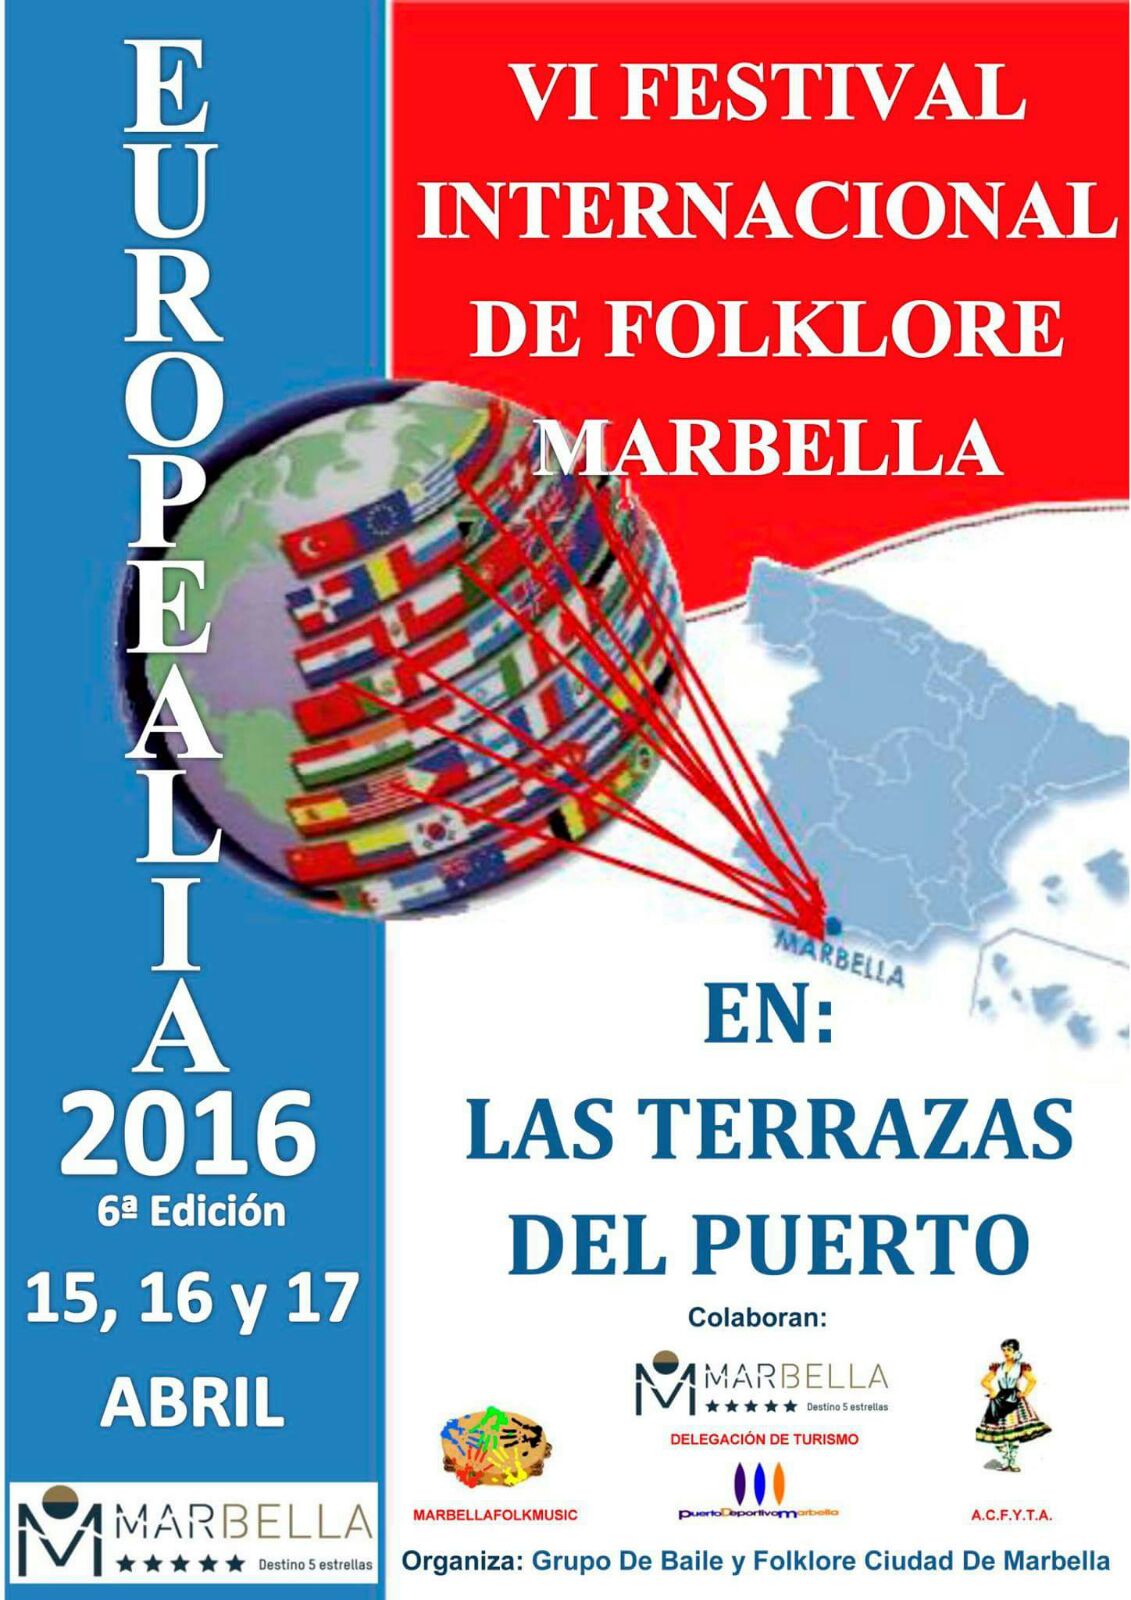 Mercado artesano en el festival de folklore EUROPEALIA del 15 al 17 de Abril del 2016